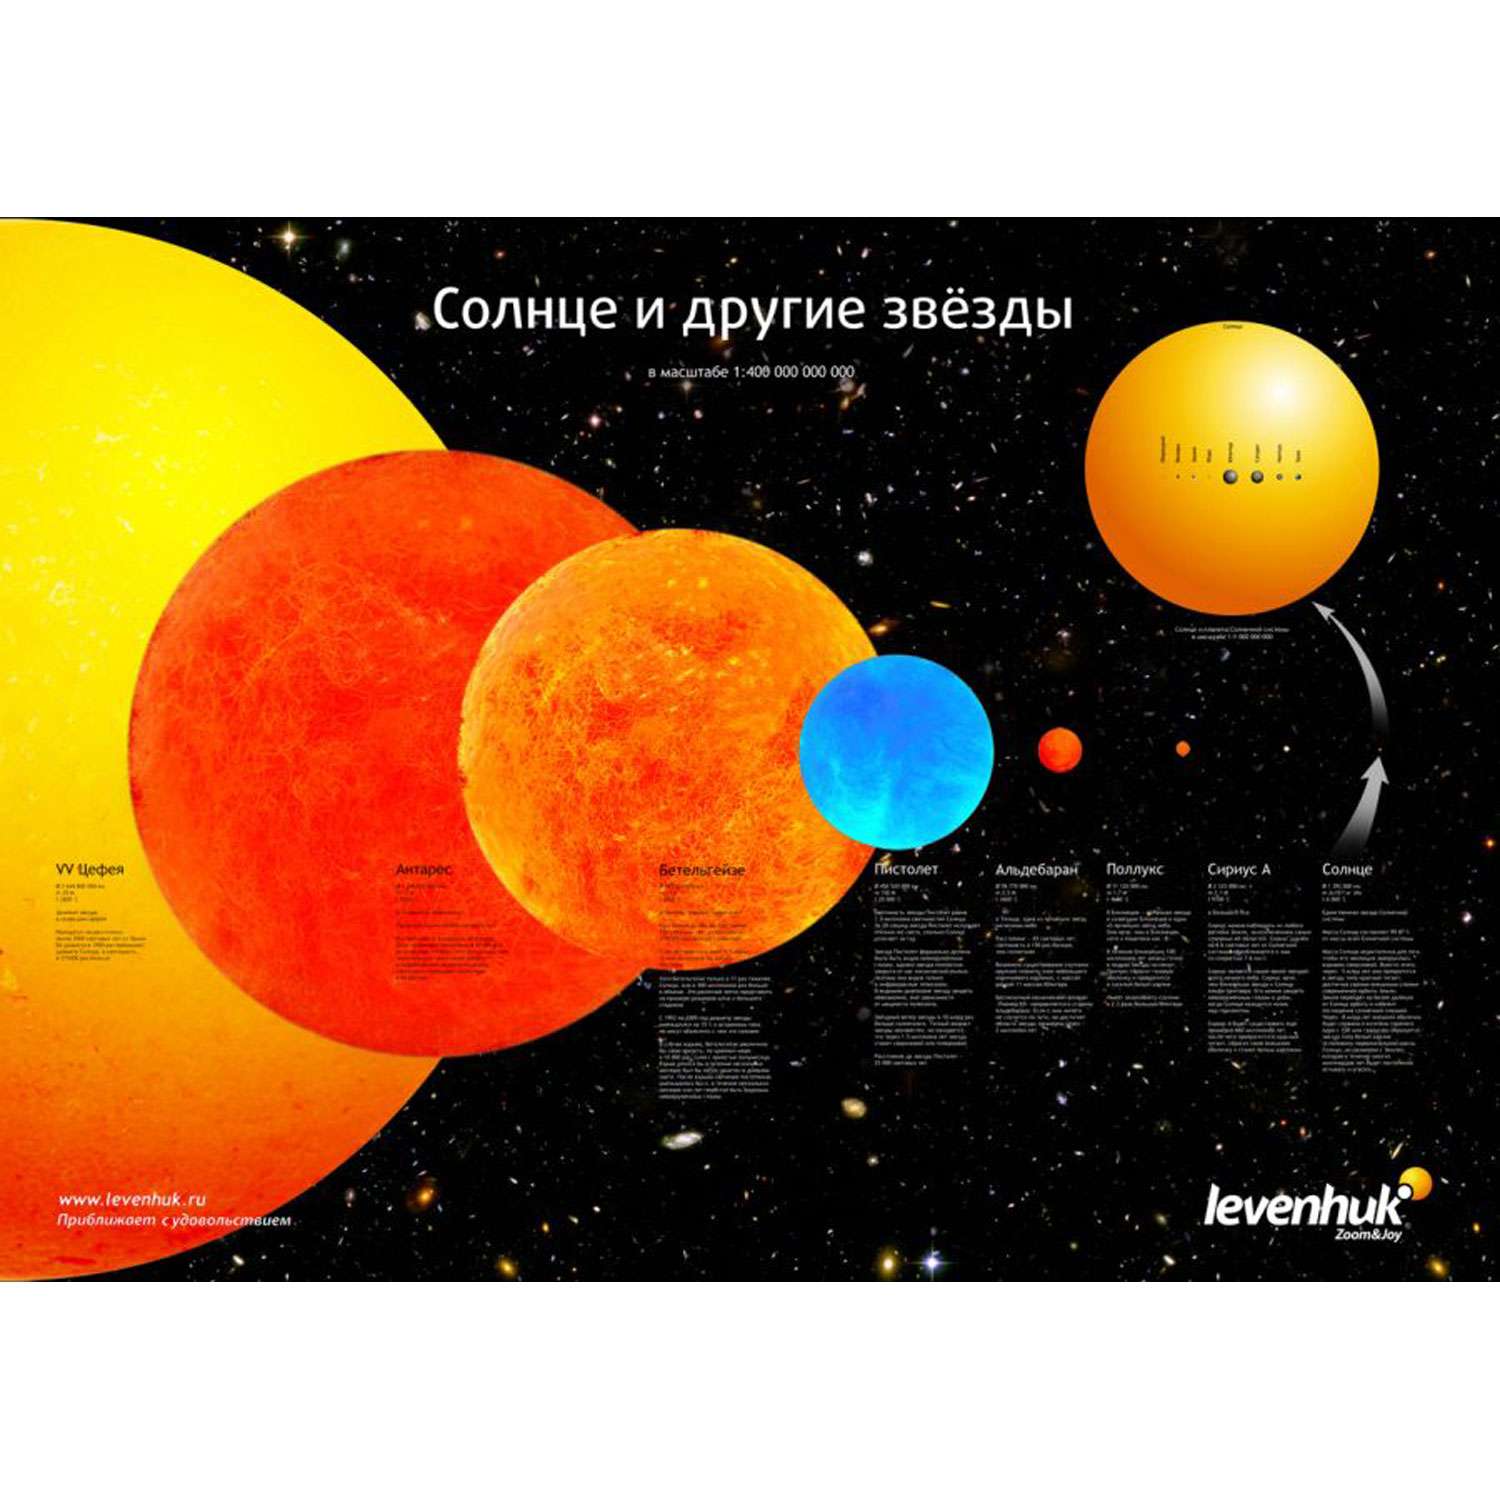 Постер Levenhuk «Солнце и другие звезды» - фото 1